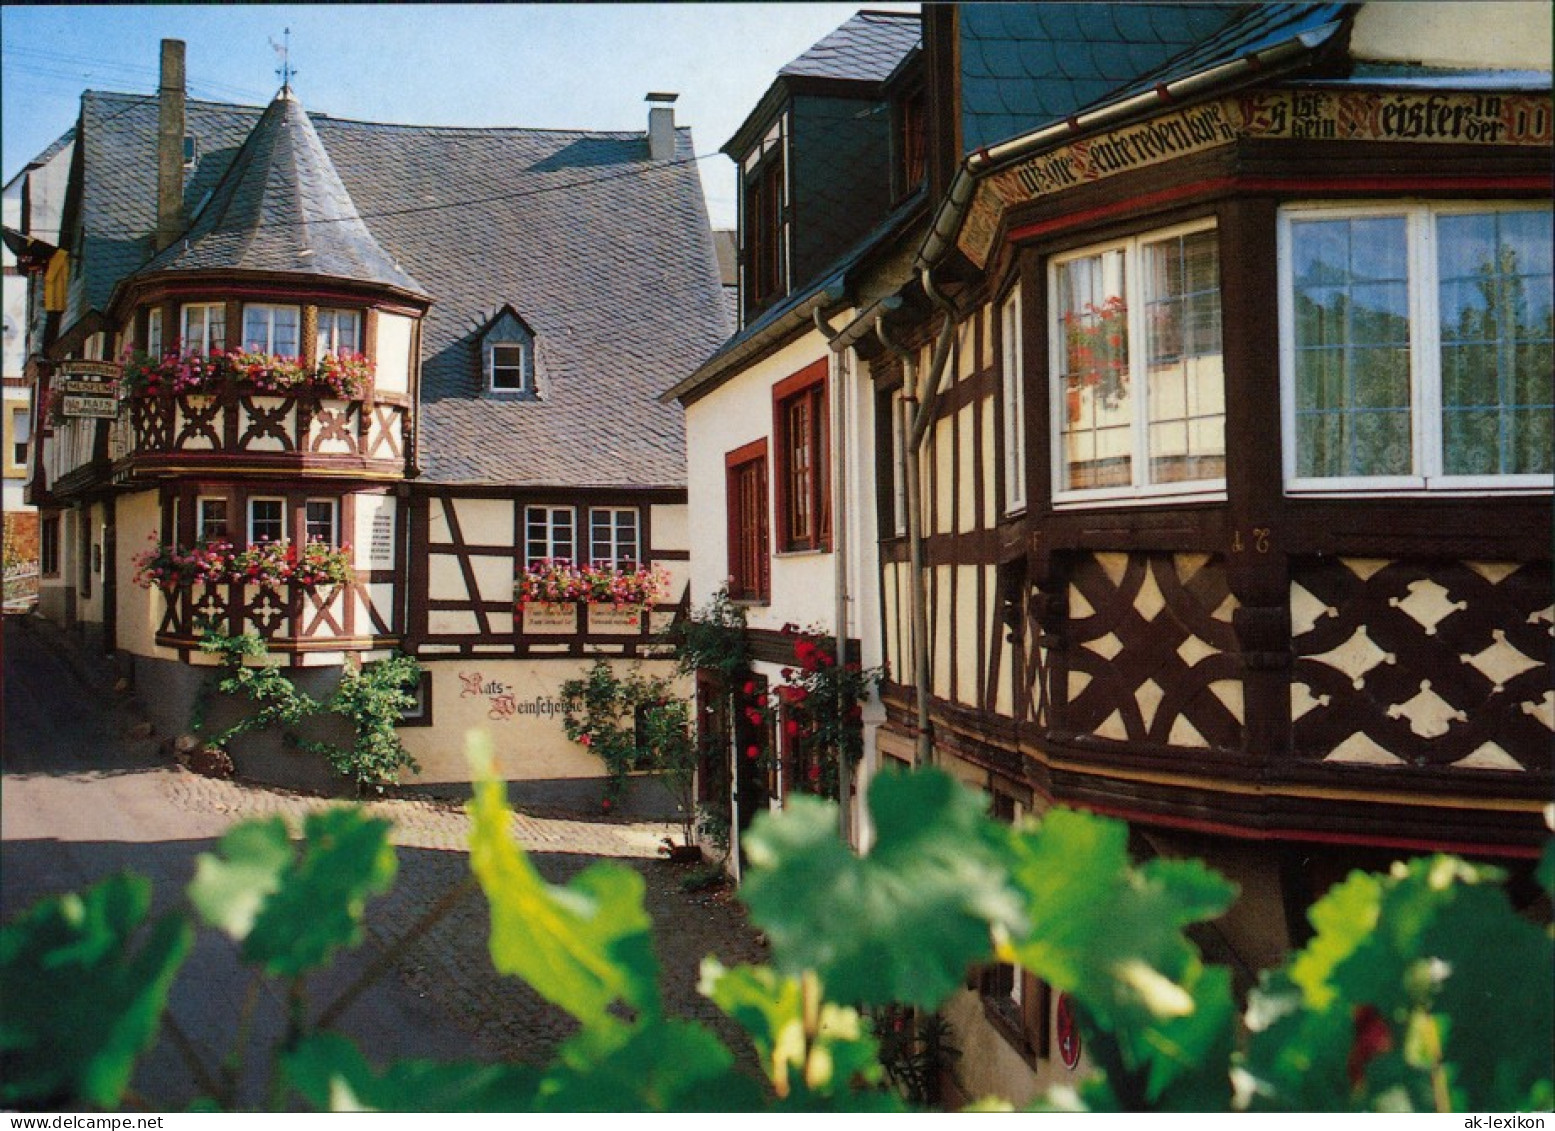 Ansichtskarte Enkirch-Traben-Trarbach Heimatstuben Und Ratsschenke 1995 - Traben-Trarbach